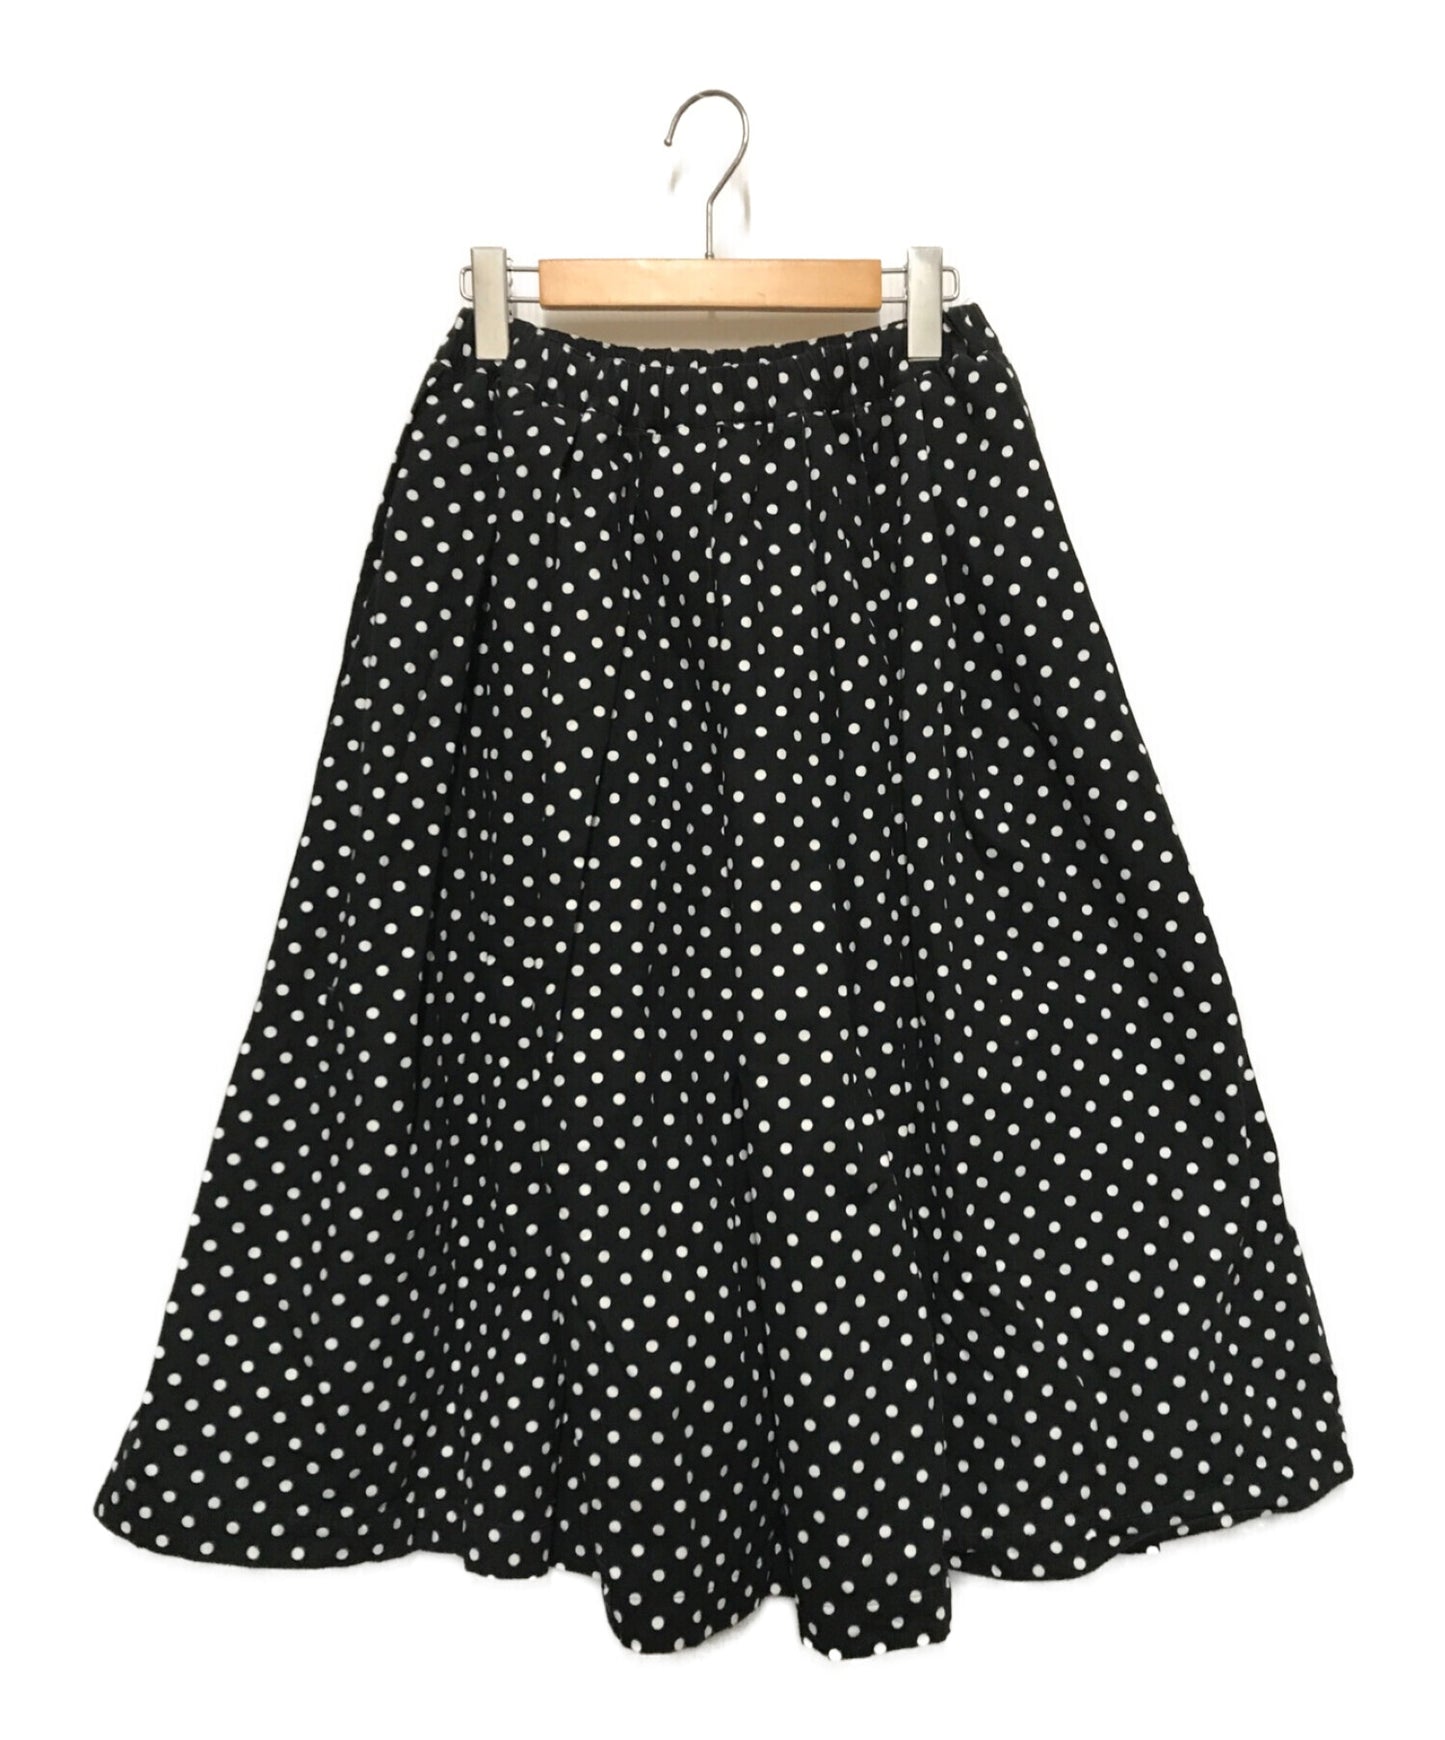 Black Comme des garcons dot skirt flared skirt 1o-s006